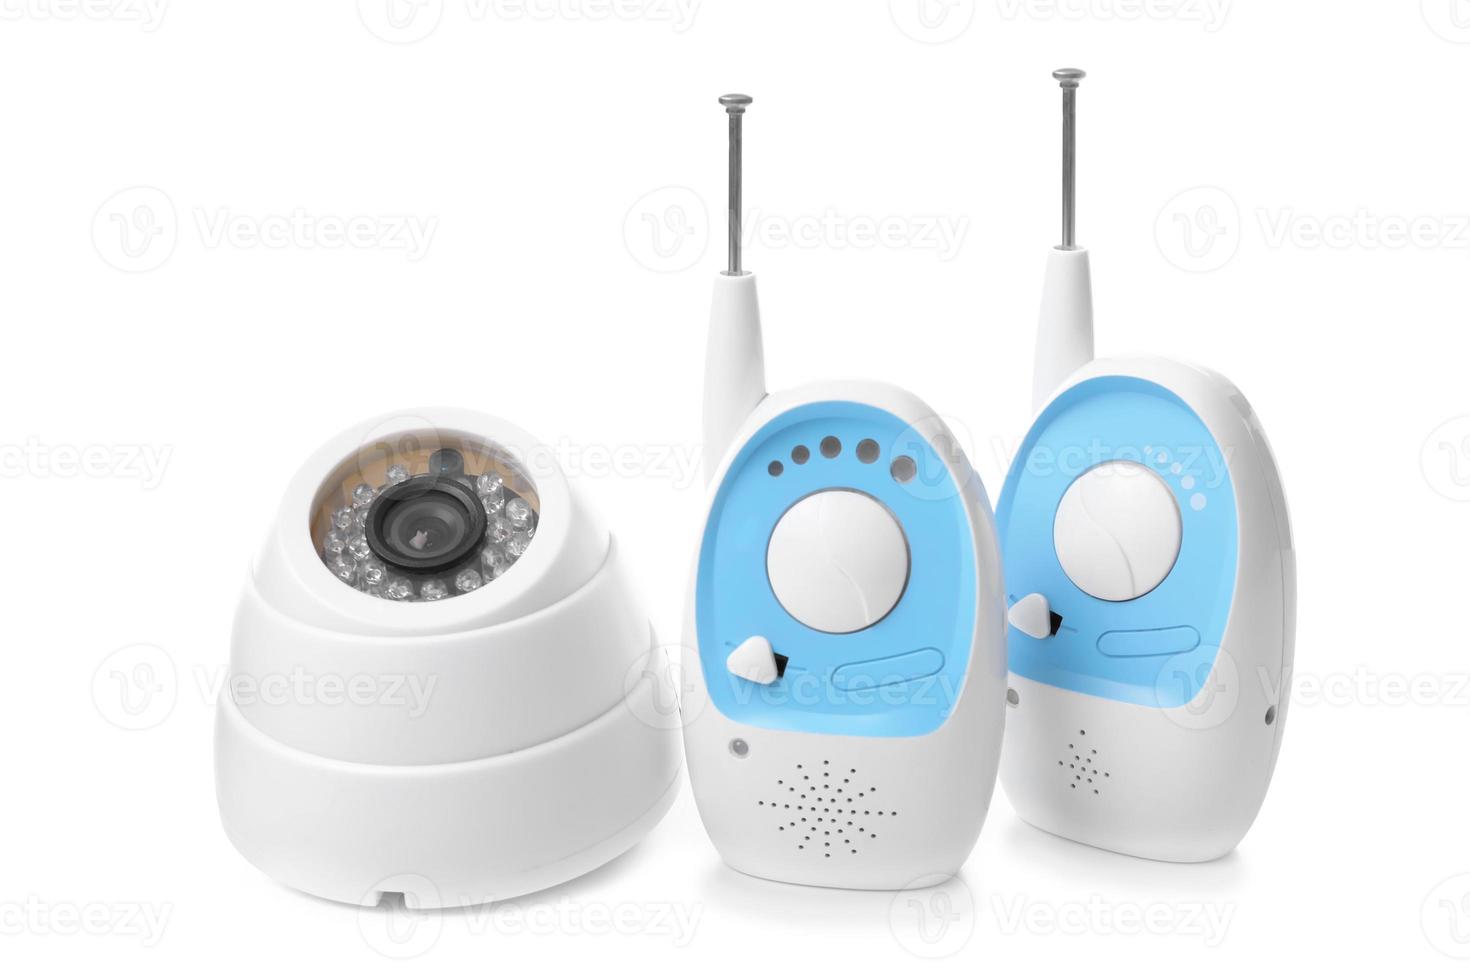 unités de surveillance pour bébé et caméra vidéo sur fond blanc. nounou radio et vidéo photo